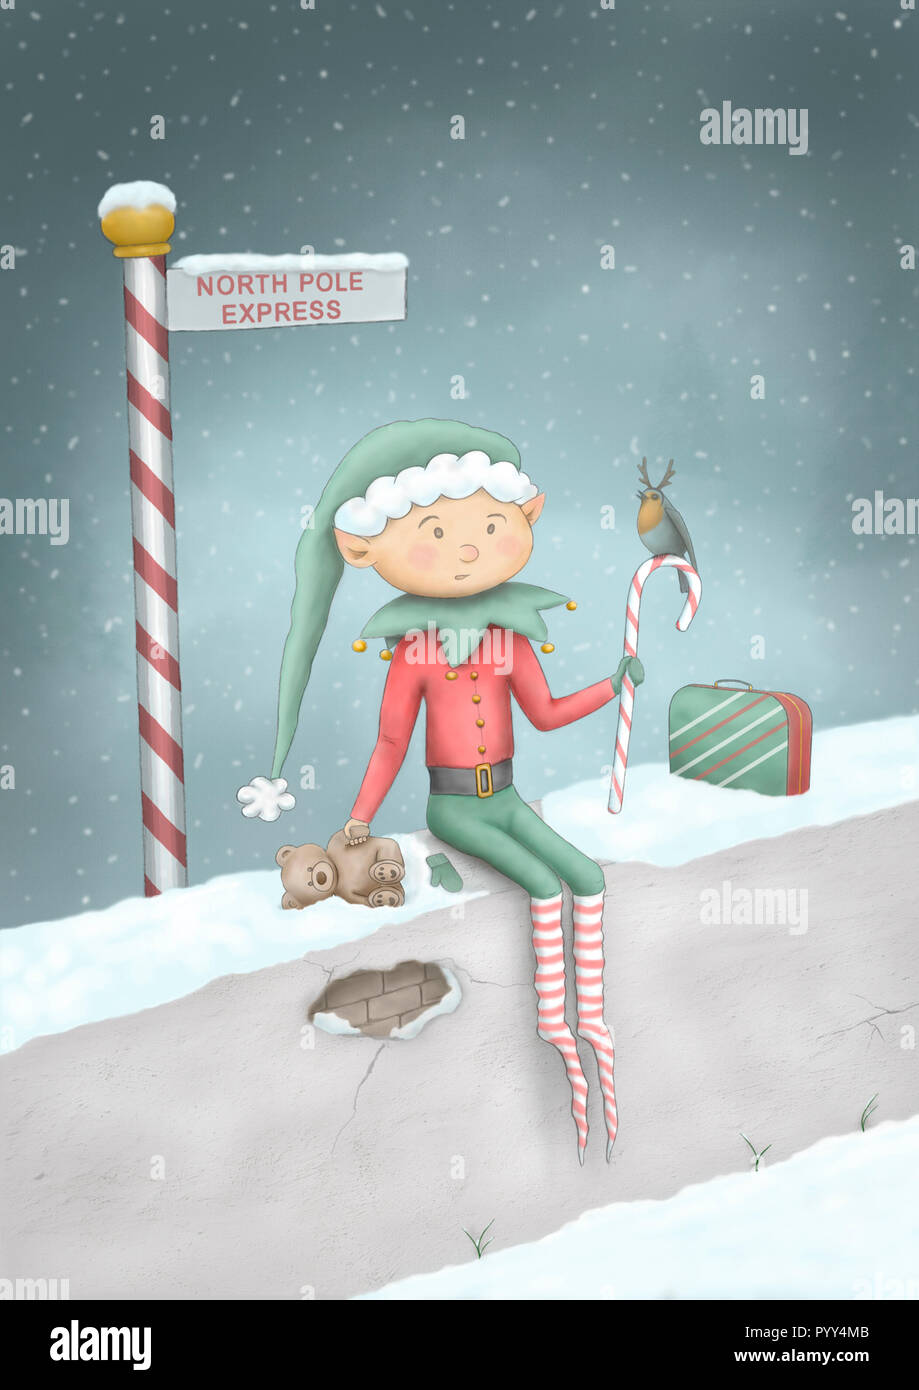 Couleur mignon Noël dessinés à la main, illustration de elf assis sur mur de neige au Pôle Nord Express sign post, avec des ours, Candy Cane, robind Banque D'Images